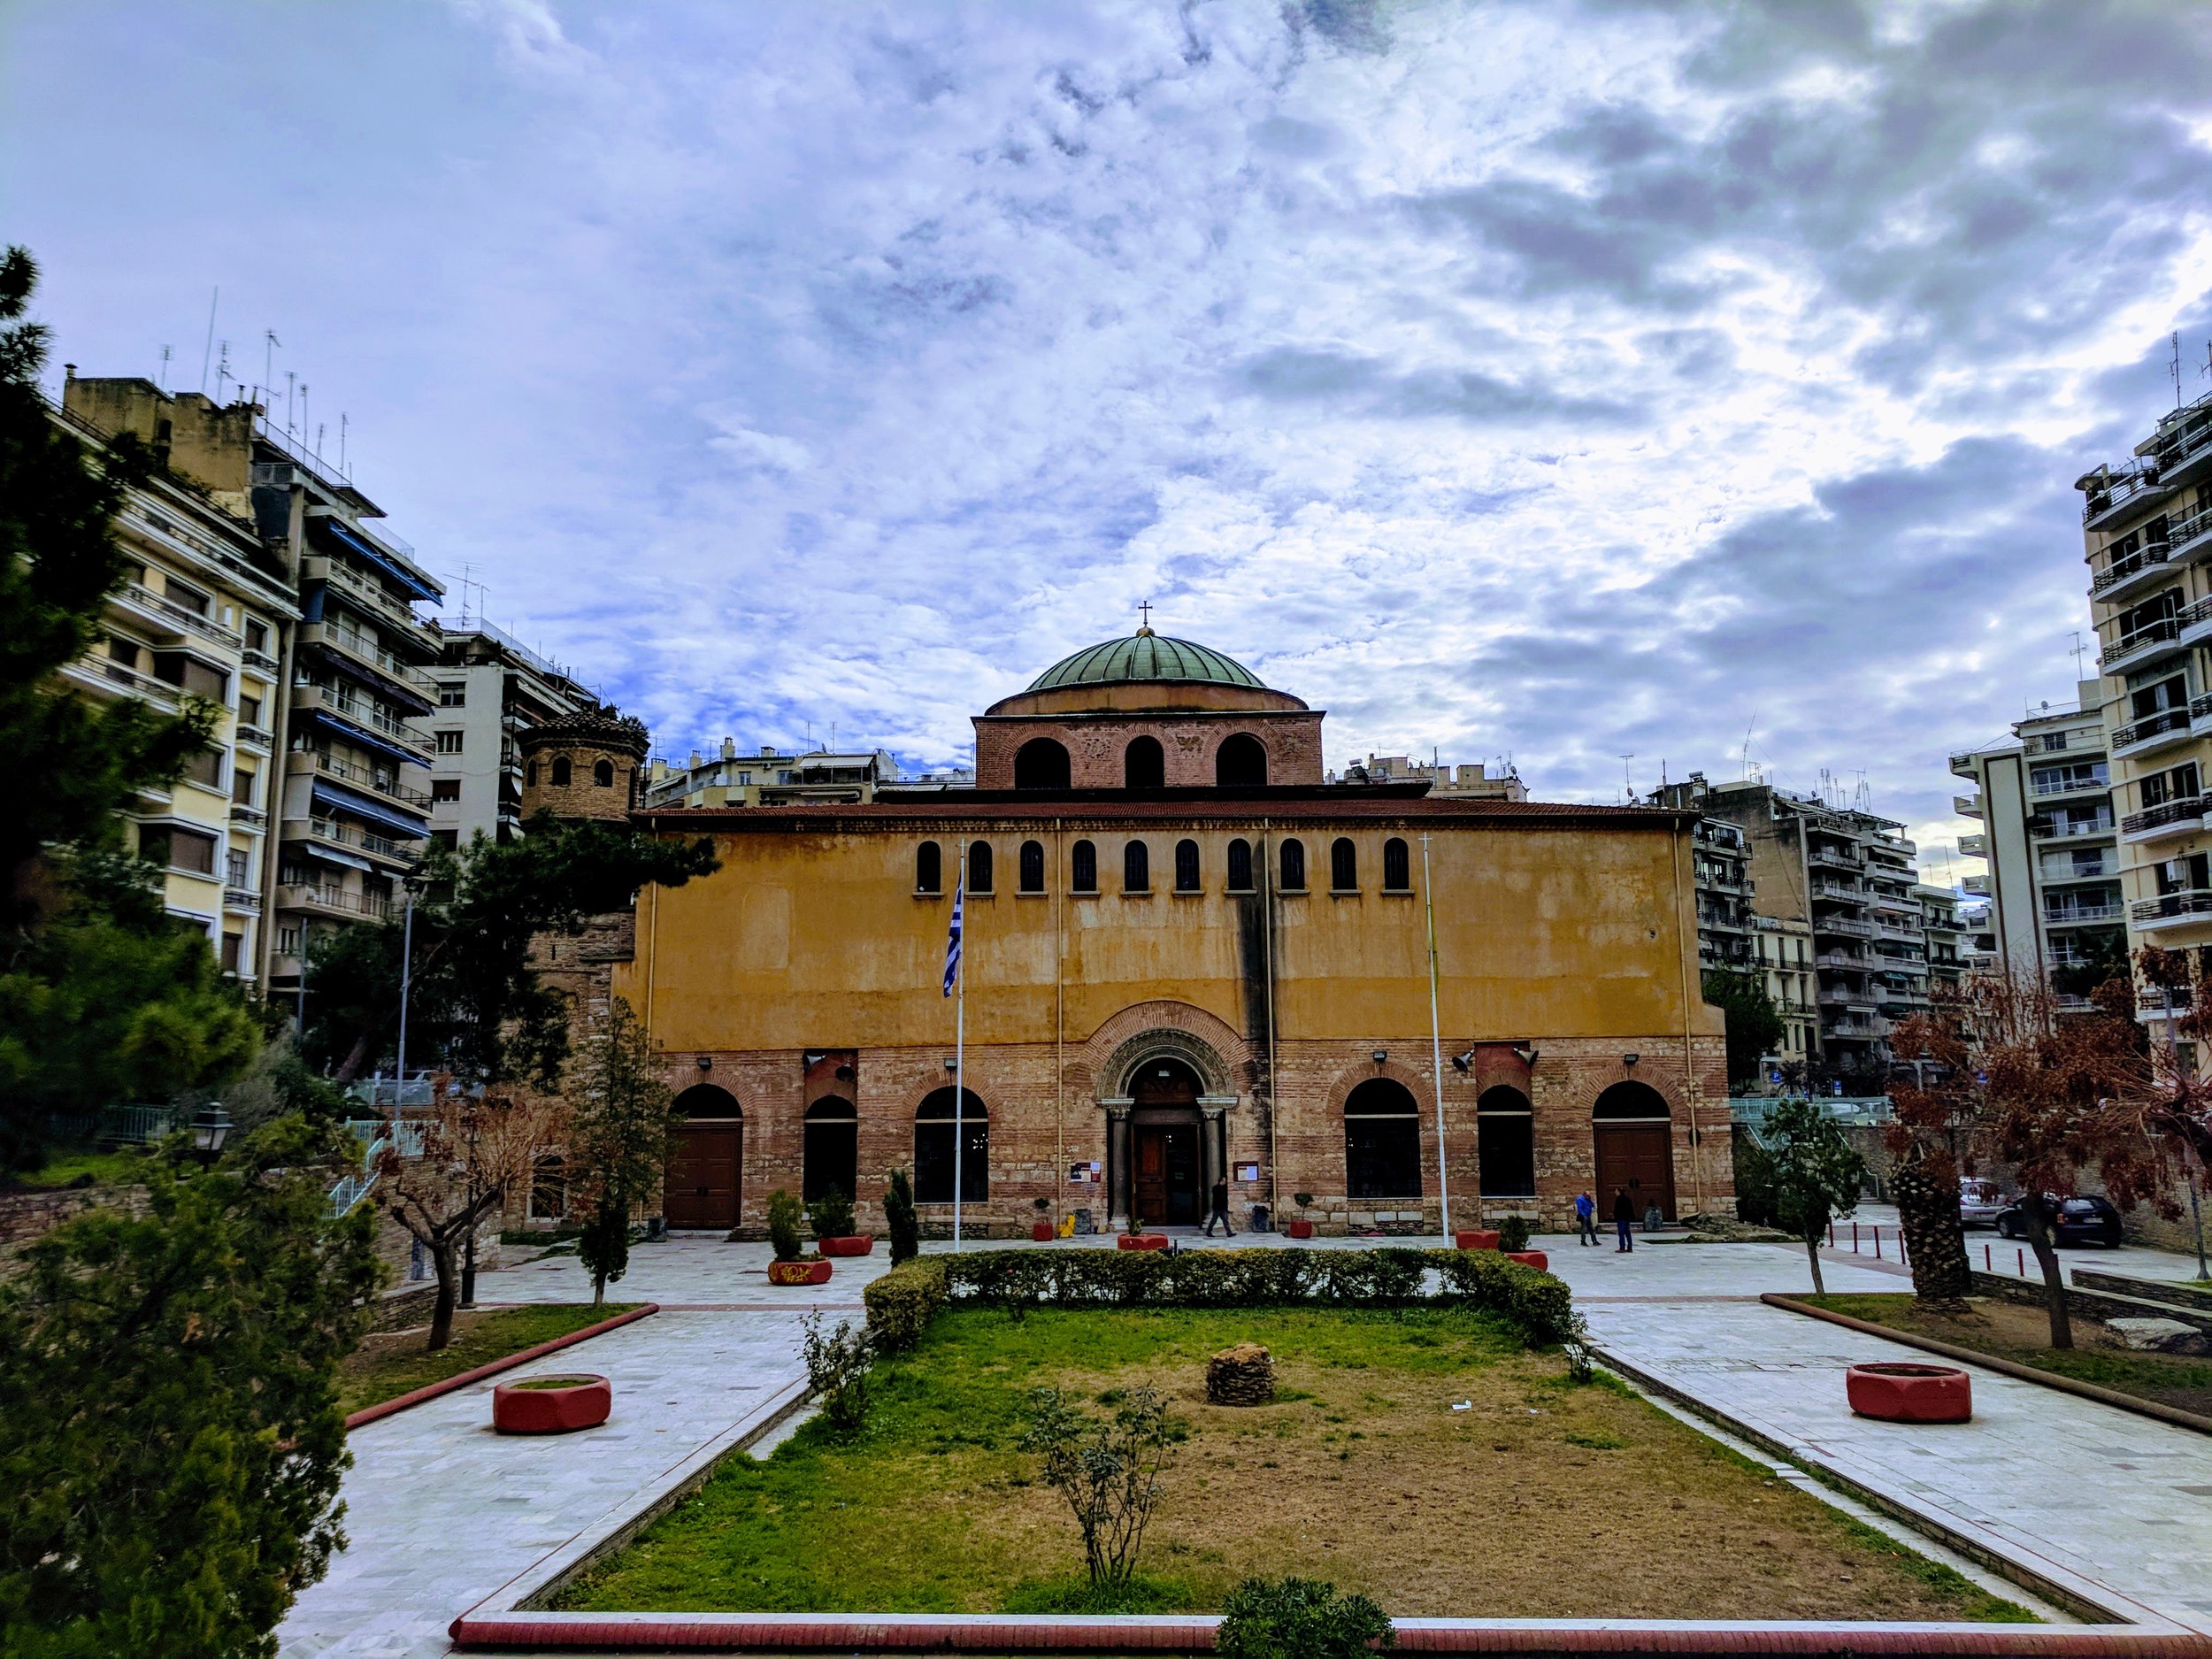 Agia Sofia